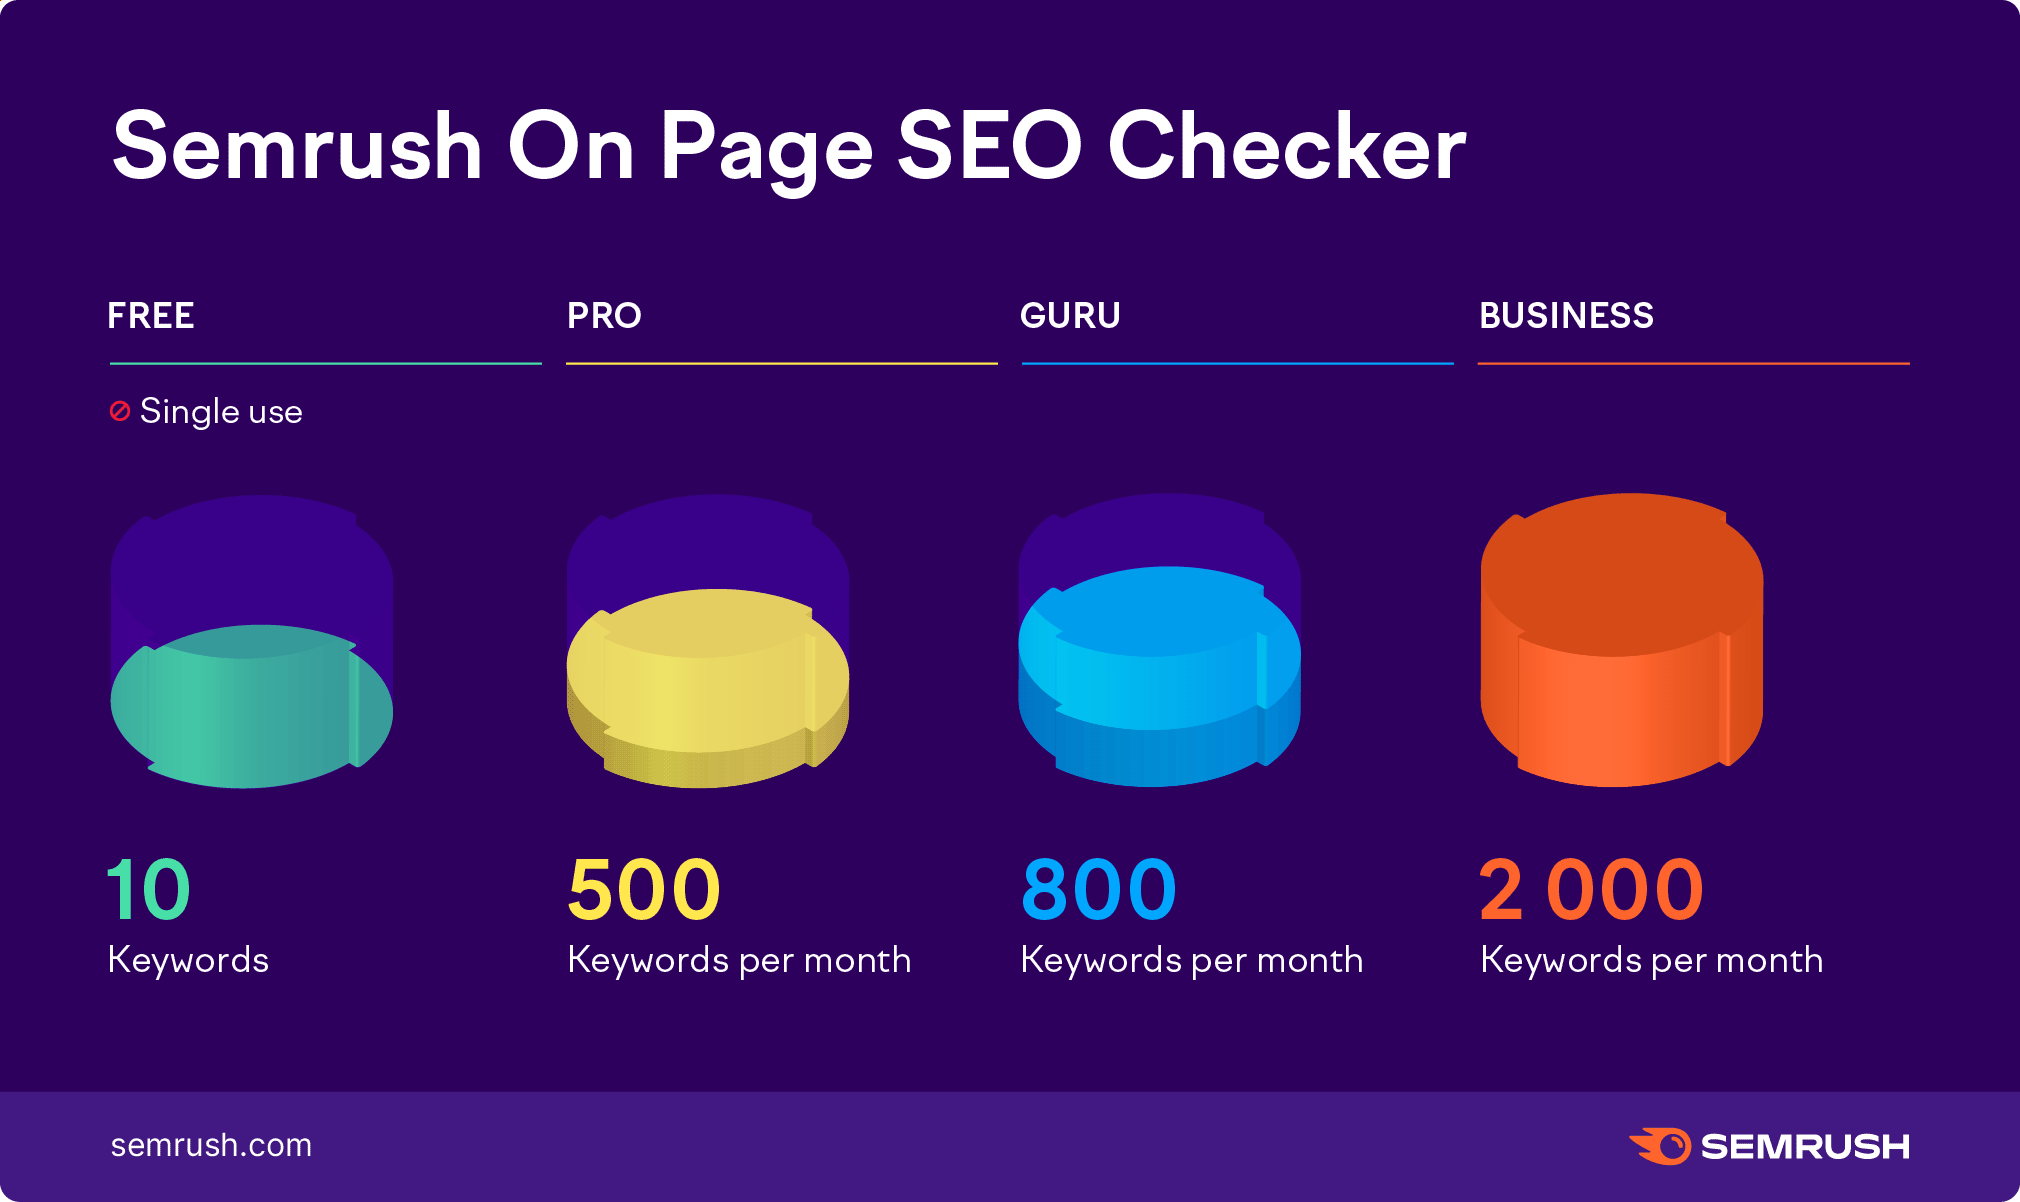 On Page SEO Checker de Semrush. Plan gratuito: uso único, 10 palabras clave. Plan Pro: 500 palabras clave al mes. Guru: 800 palabras clave al mes. Plan Business: 2000 palabras clave al mes. 